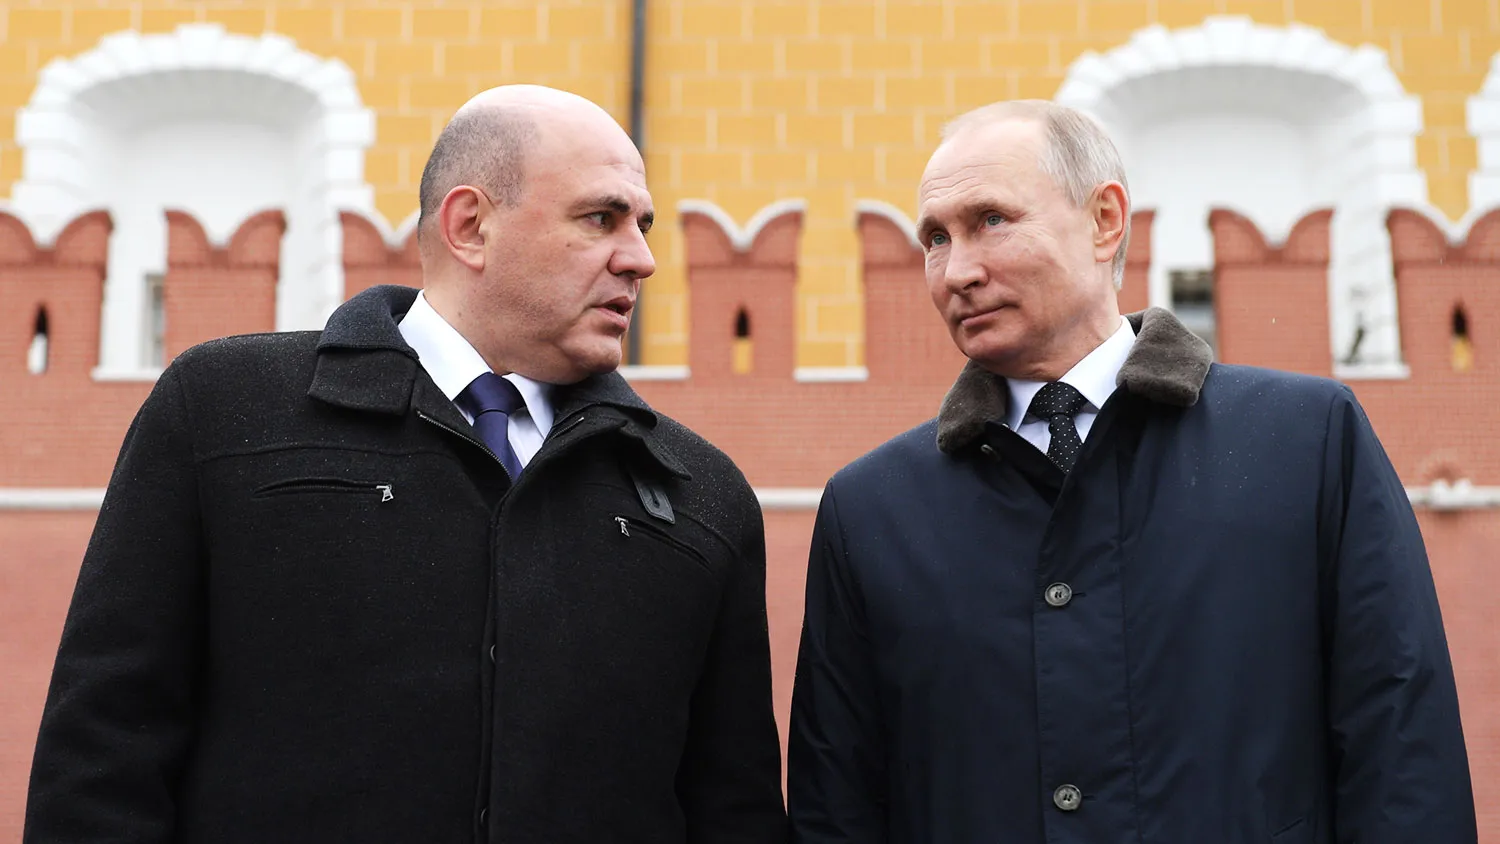 
											
											Rossiya bosh vazirligiga Putin o‘z taklifini berdi
											
											